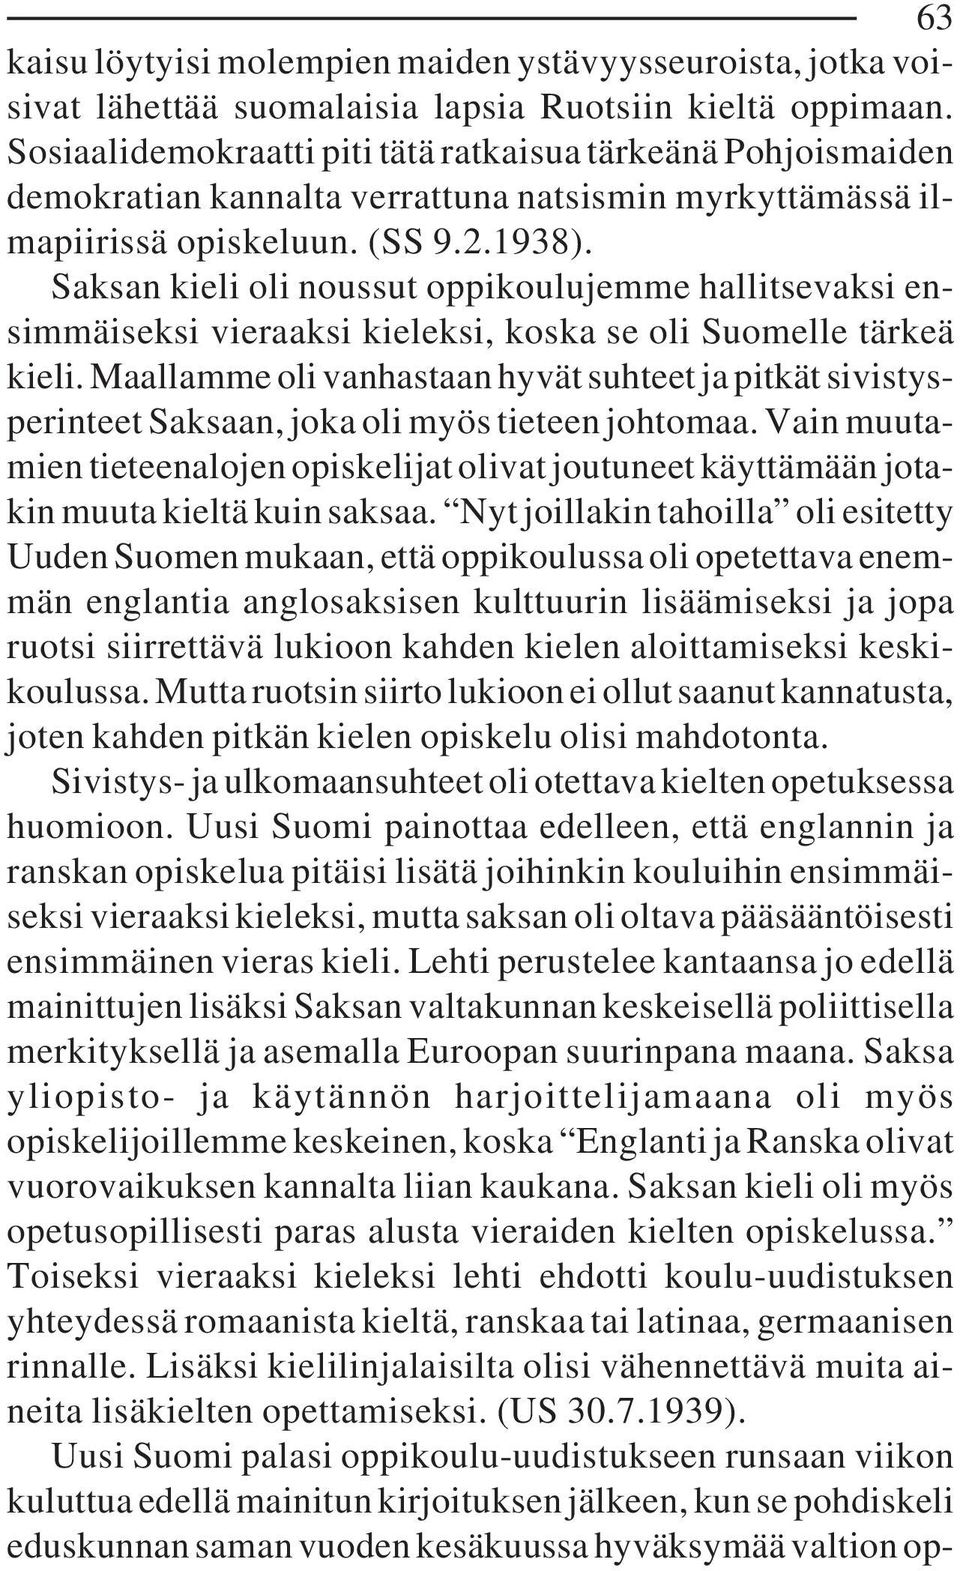 Saksan kieli oli noussut oppikoulujemme hallitsevaksi ensimmäiseksi vieraaksi kieleksi, koska se oli Suomelle tärkeä kieli.